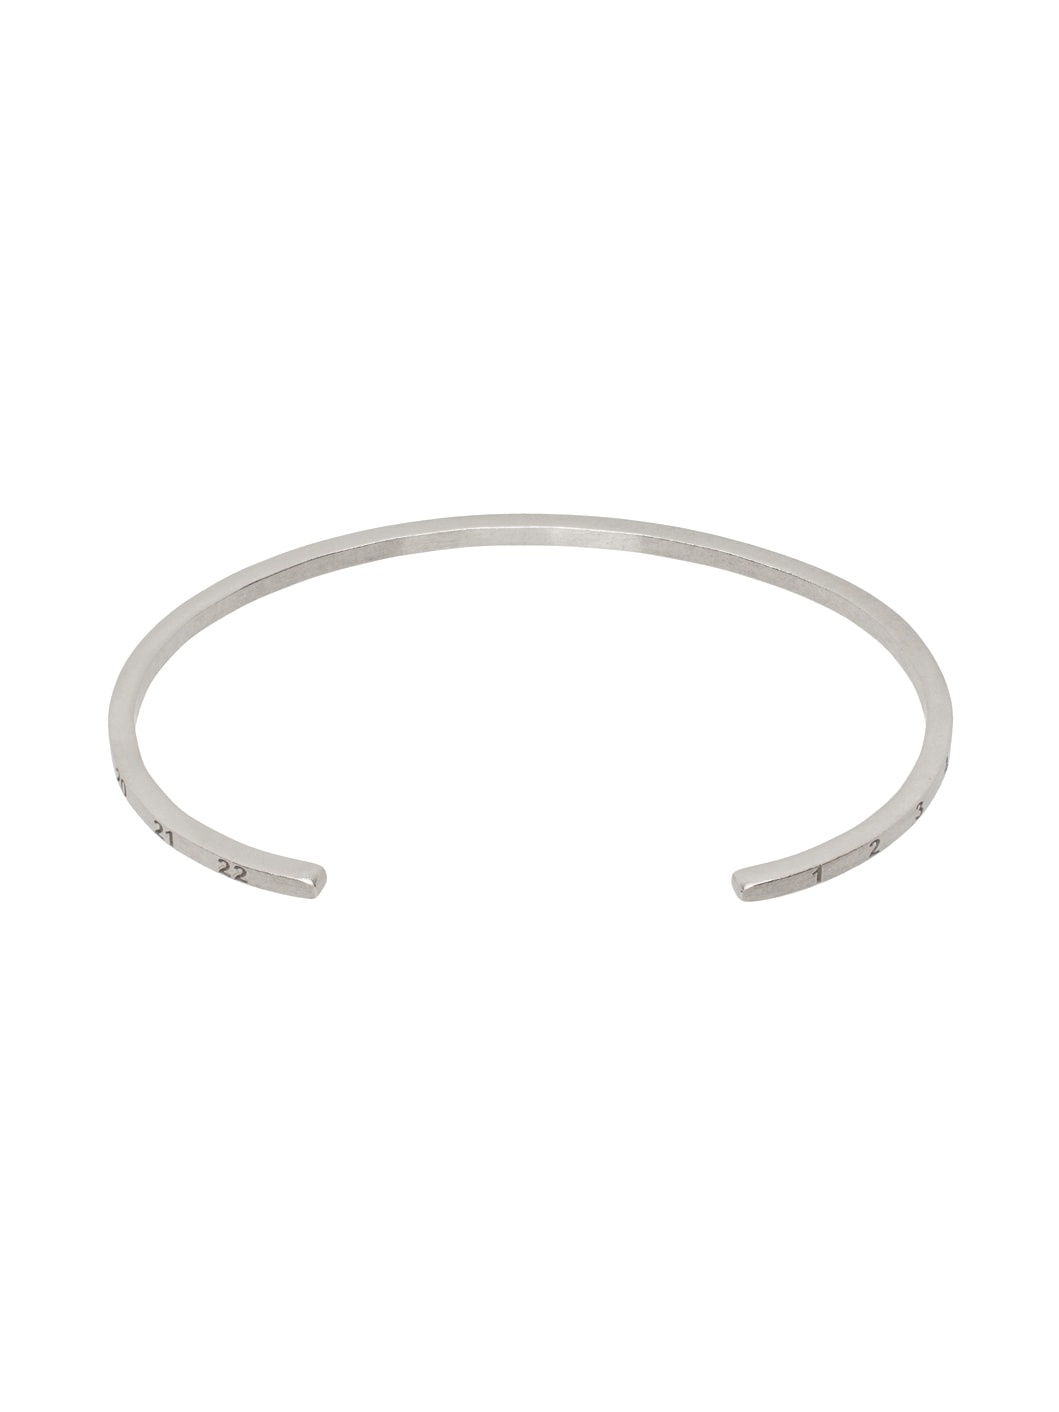 Silver Numerical Cuff Bracelet - 2